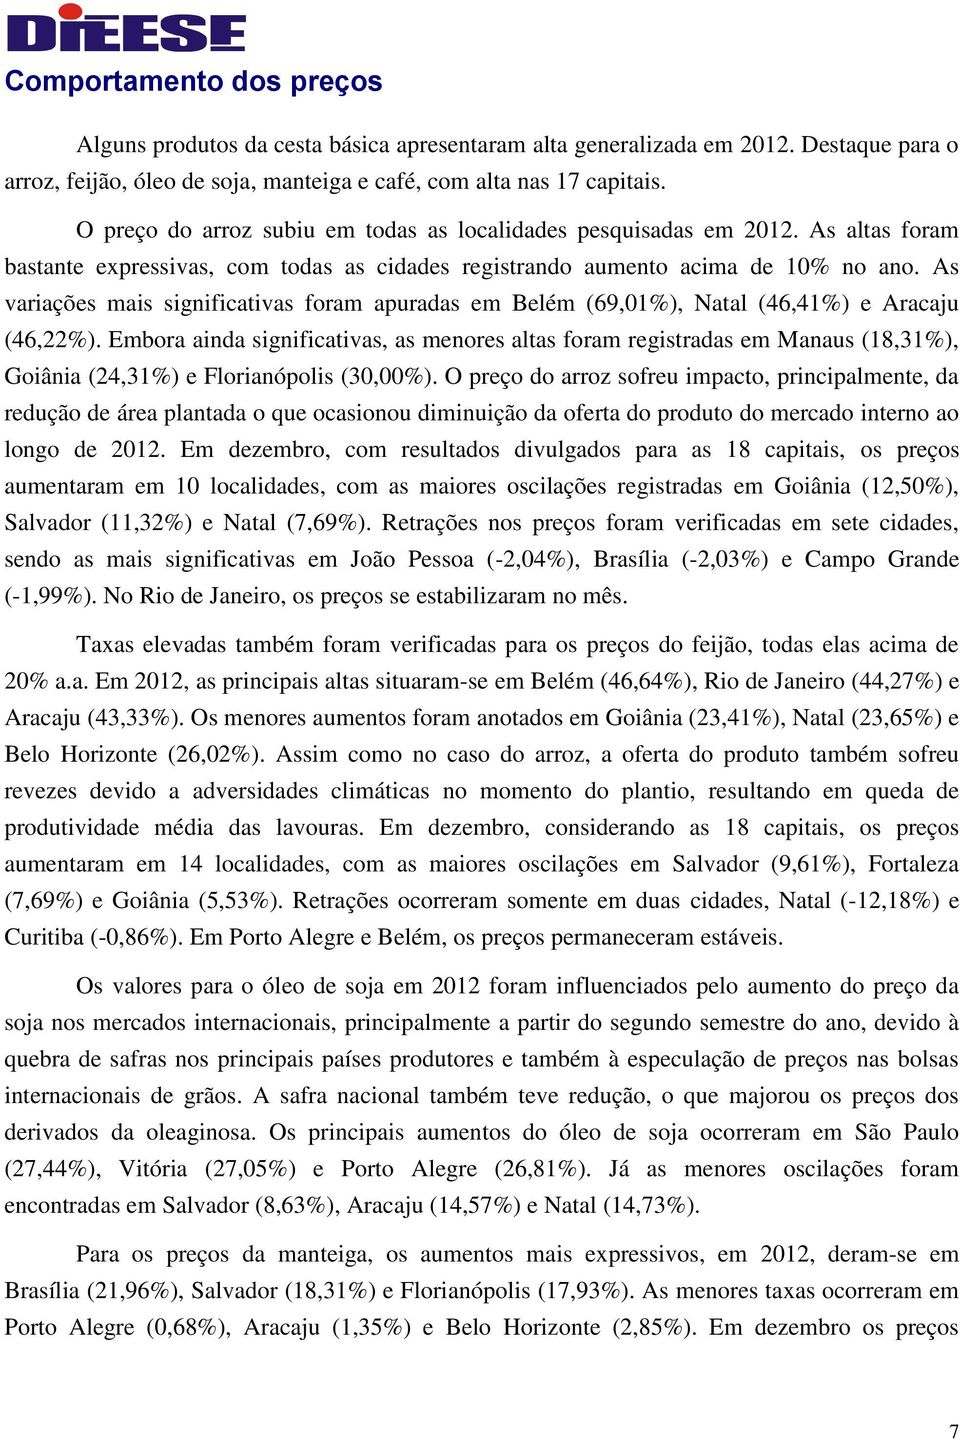 As variações mais significativas foram apuradas em Belém (69,01%), Natal (46,41%) e Aracaju (46,22%).